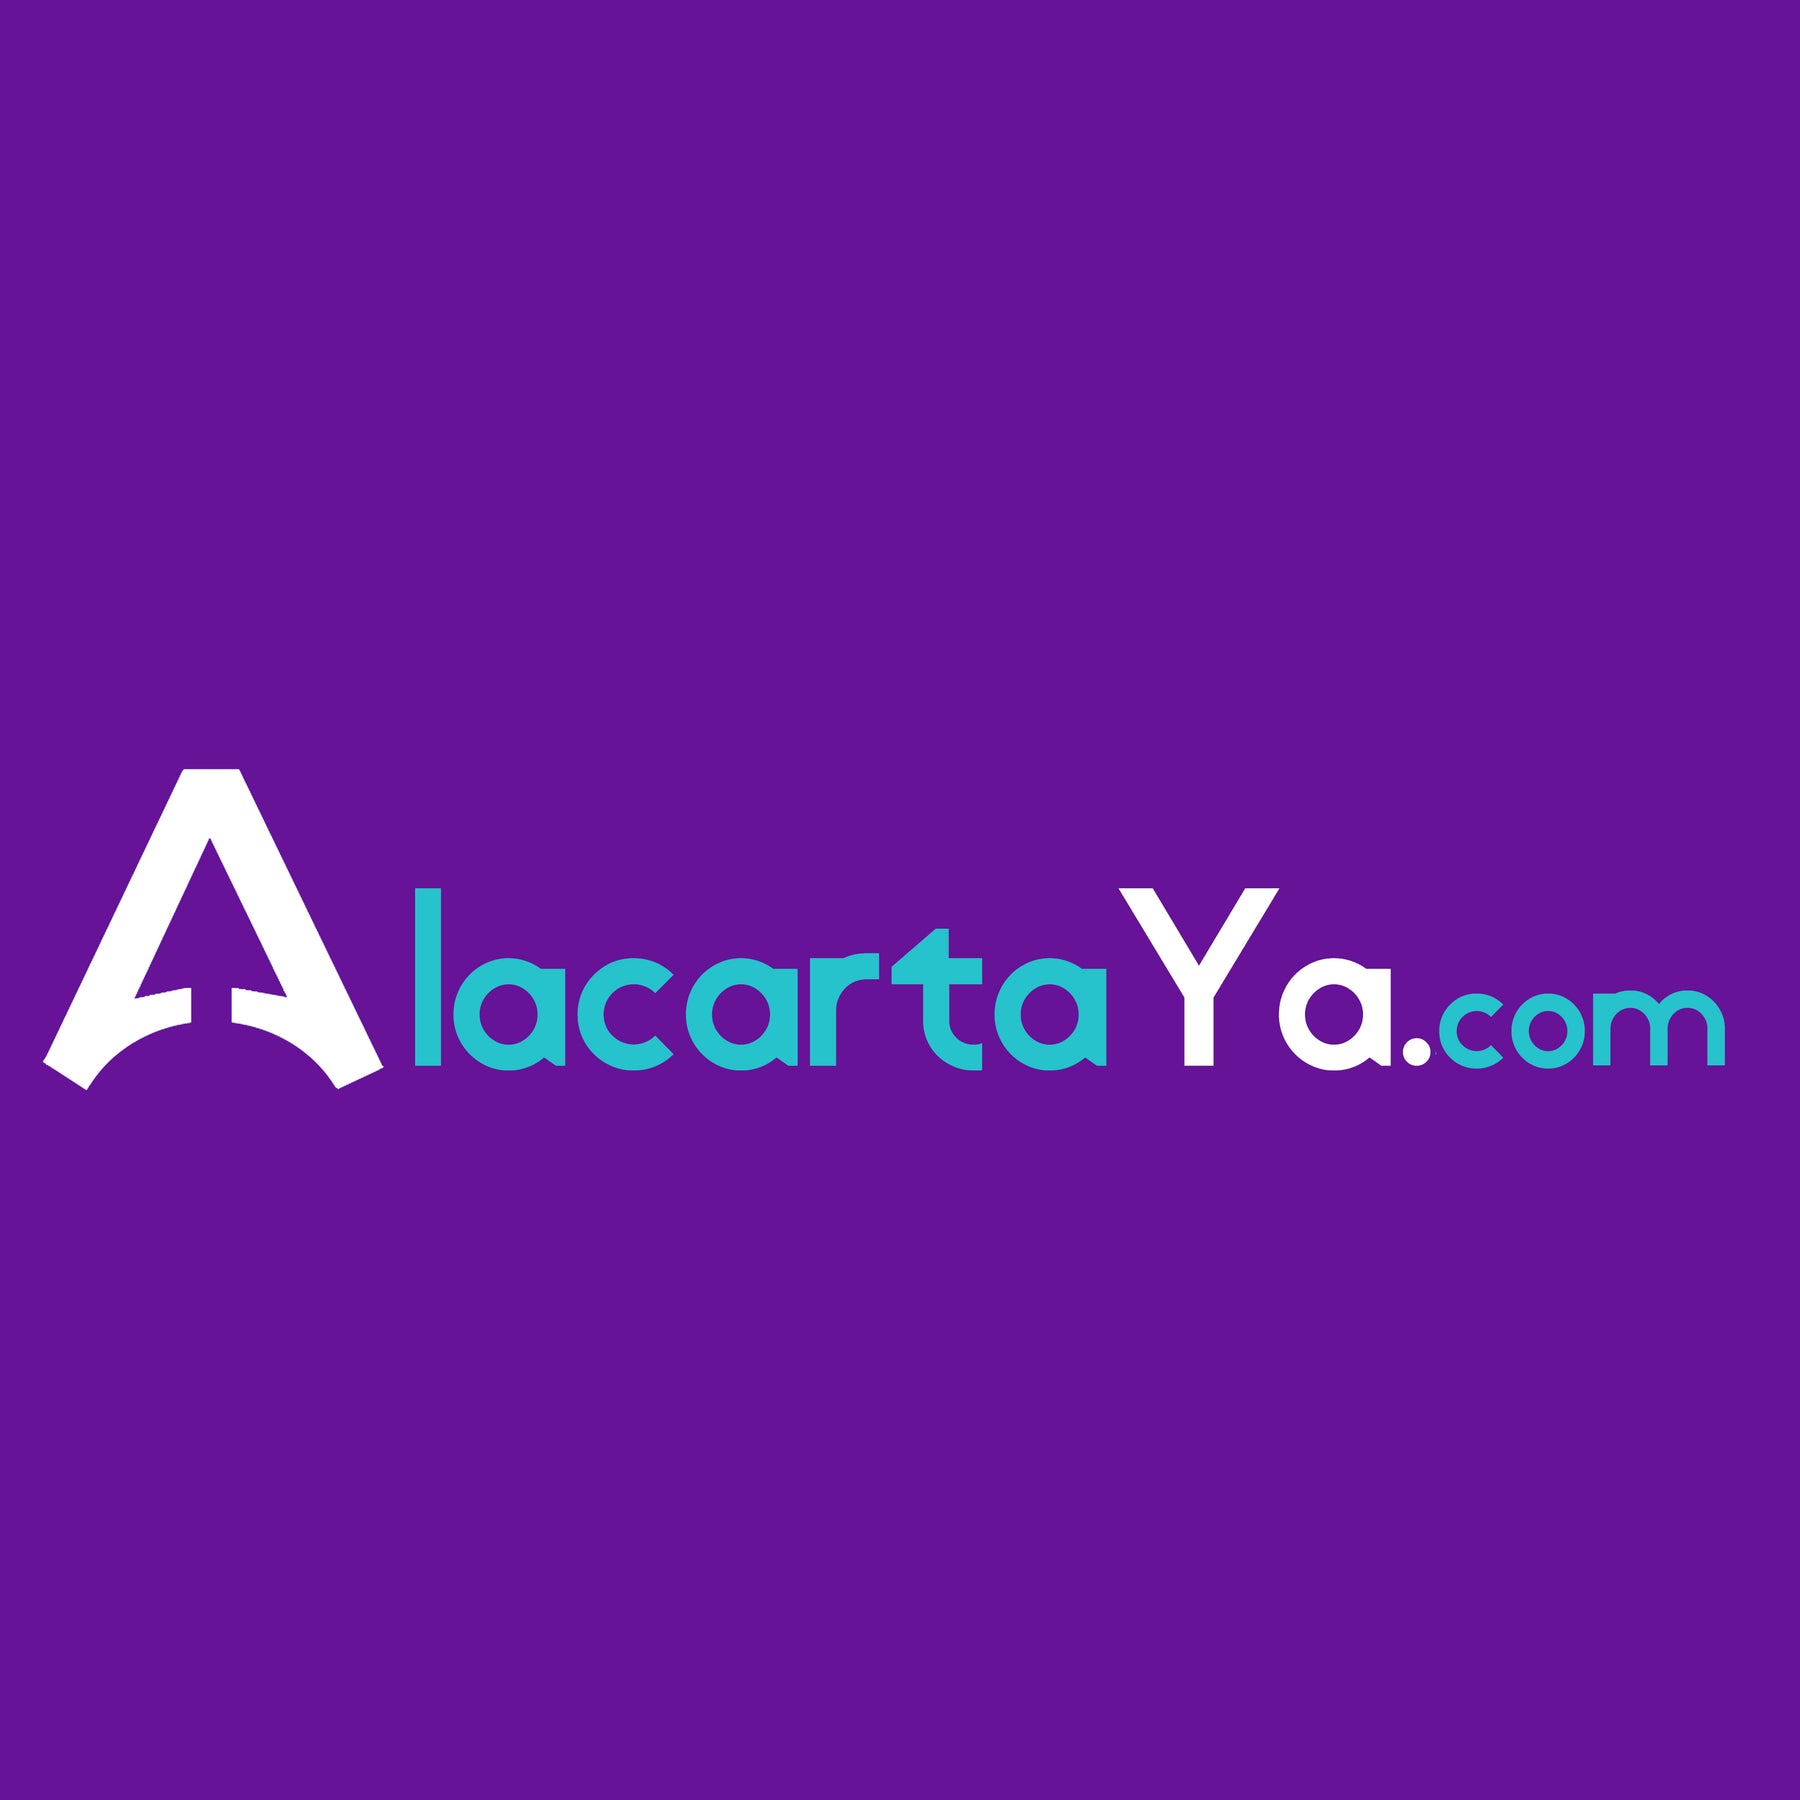 AlacartaYa.com lanza plataforma de compras online